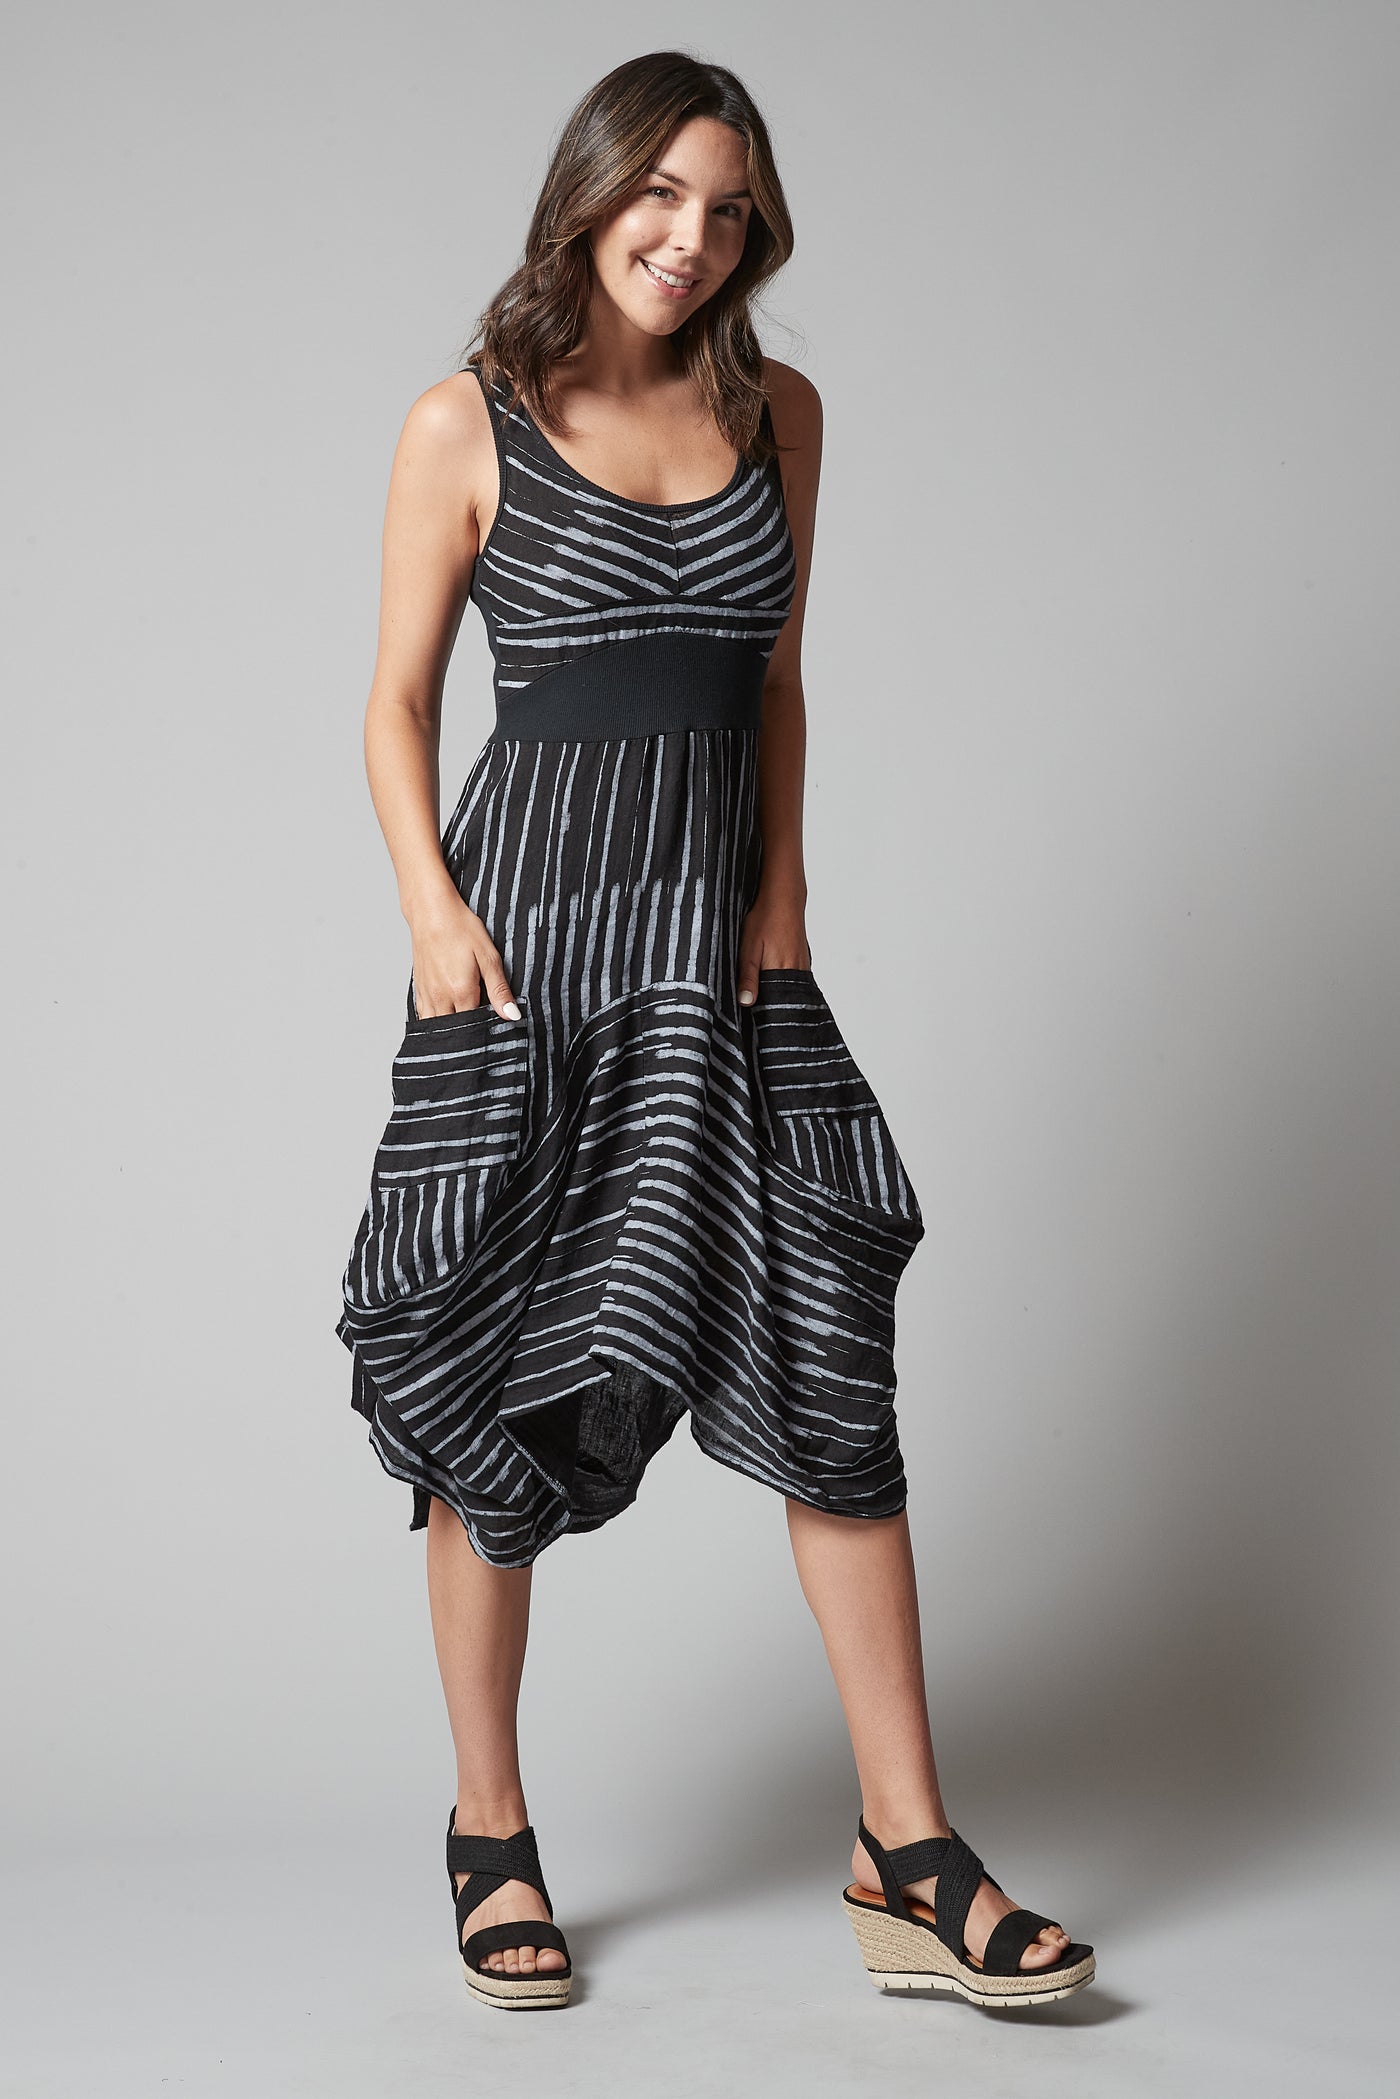 Linen Pocket Dress Black & White Stripe